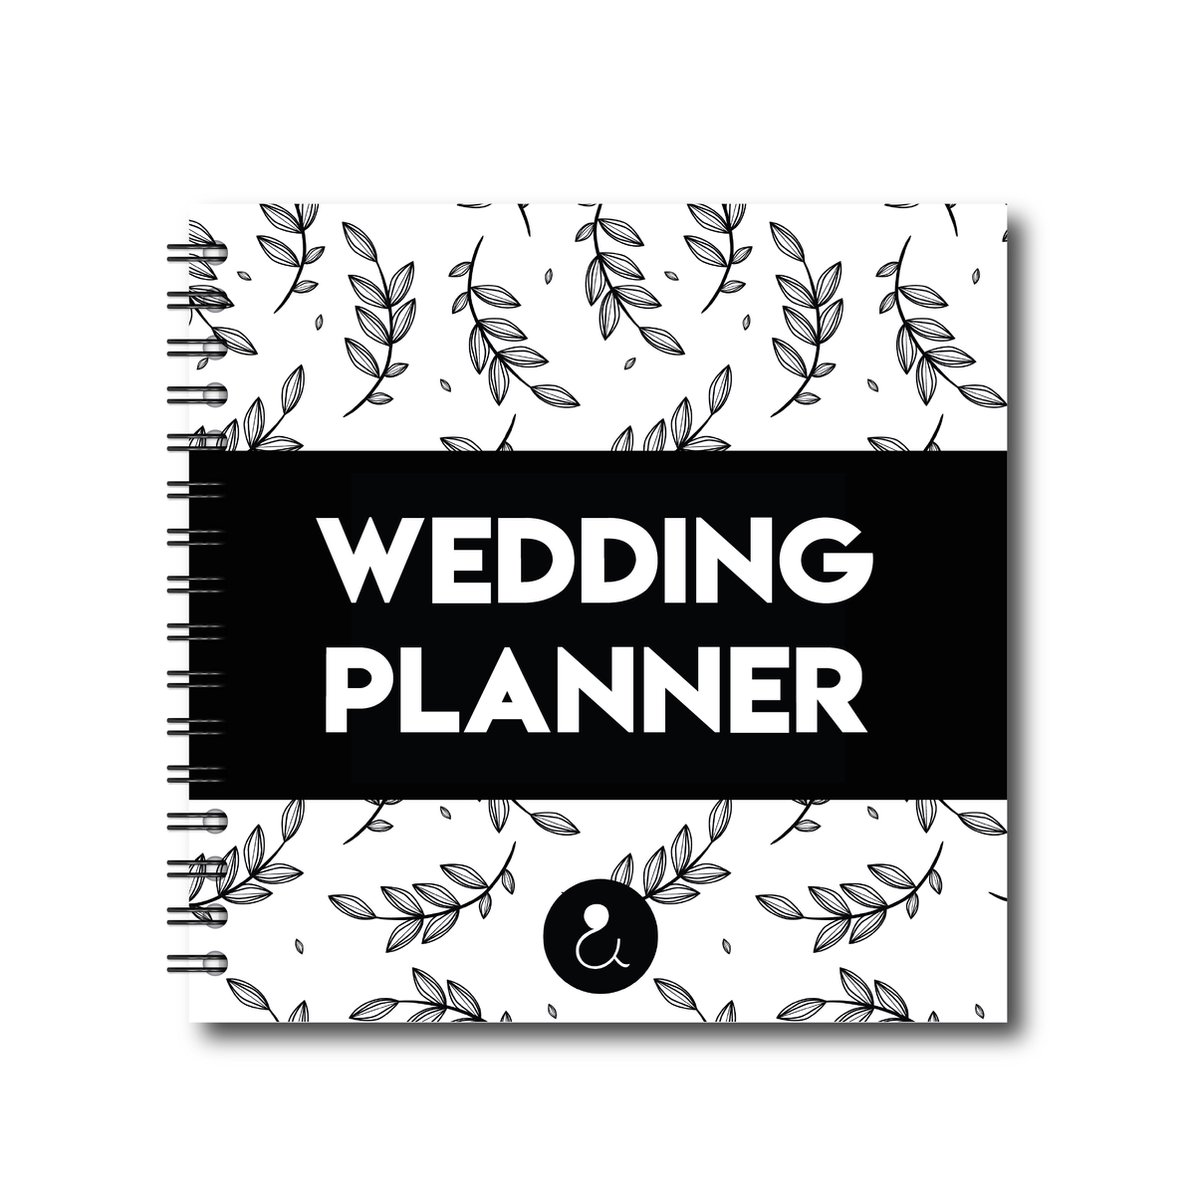 Weddingplanner invulboek - bruiloft planner - wedding planner - bruiloft - reddingplanner - trouwen boek - trouwen